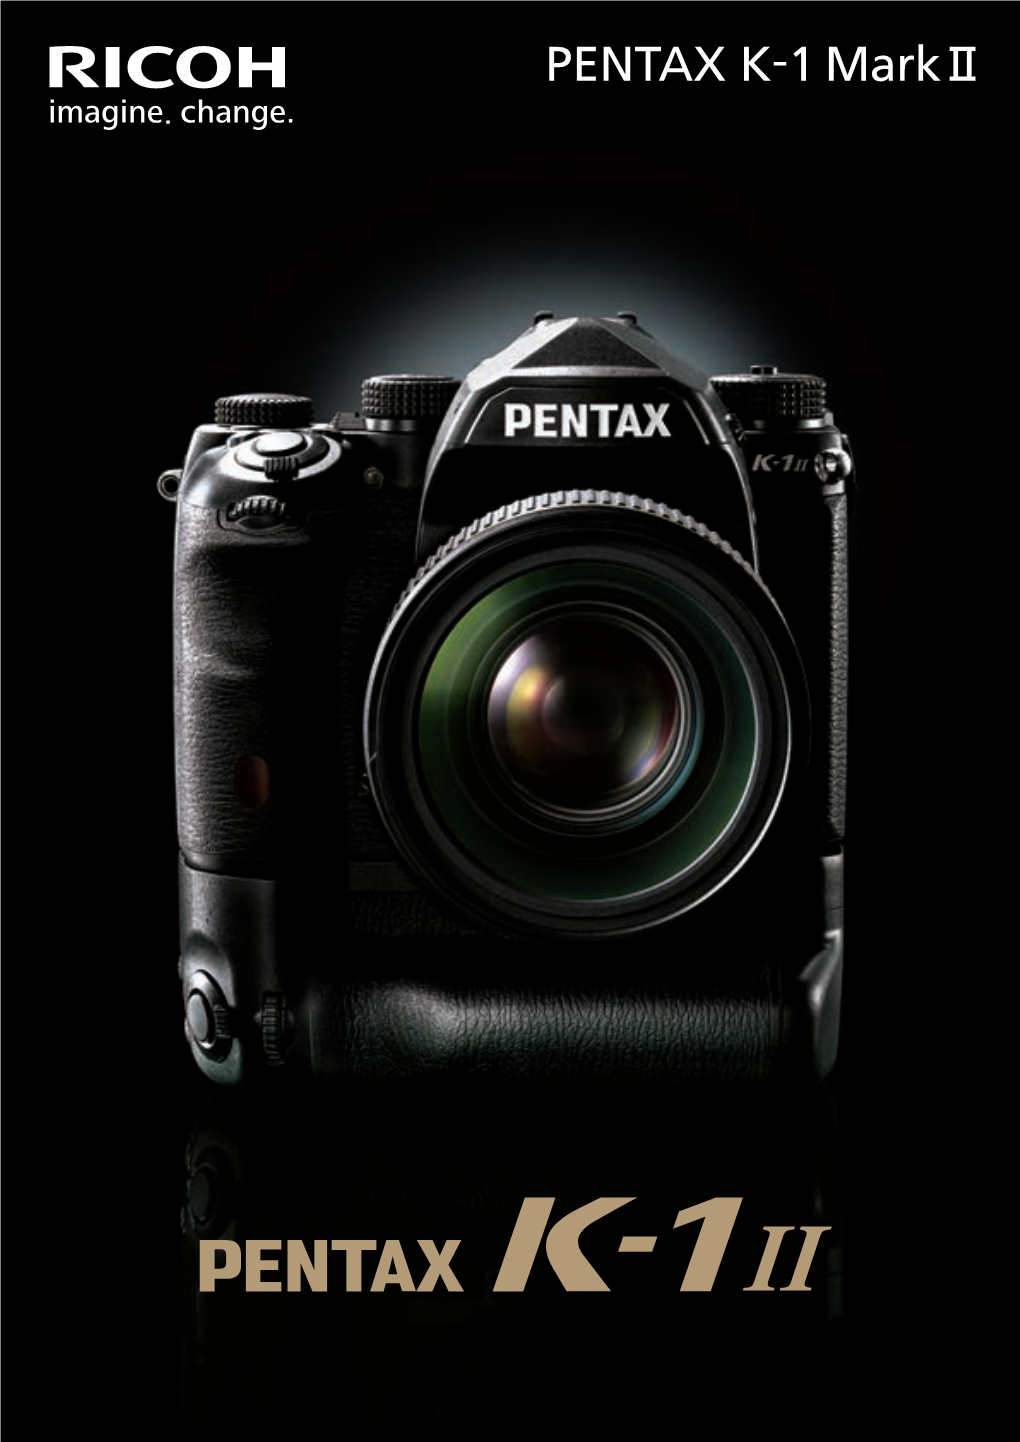 The PENTAX K-1 Mark II: the New Standard of the 35Mm Full-Frame K Series